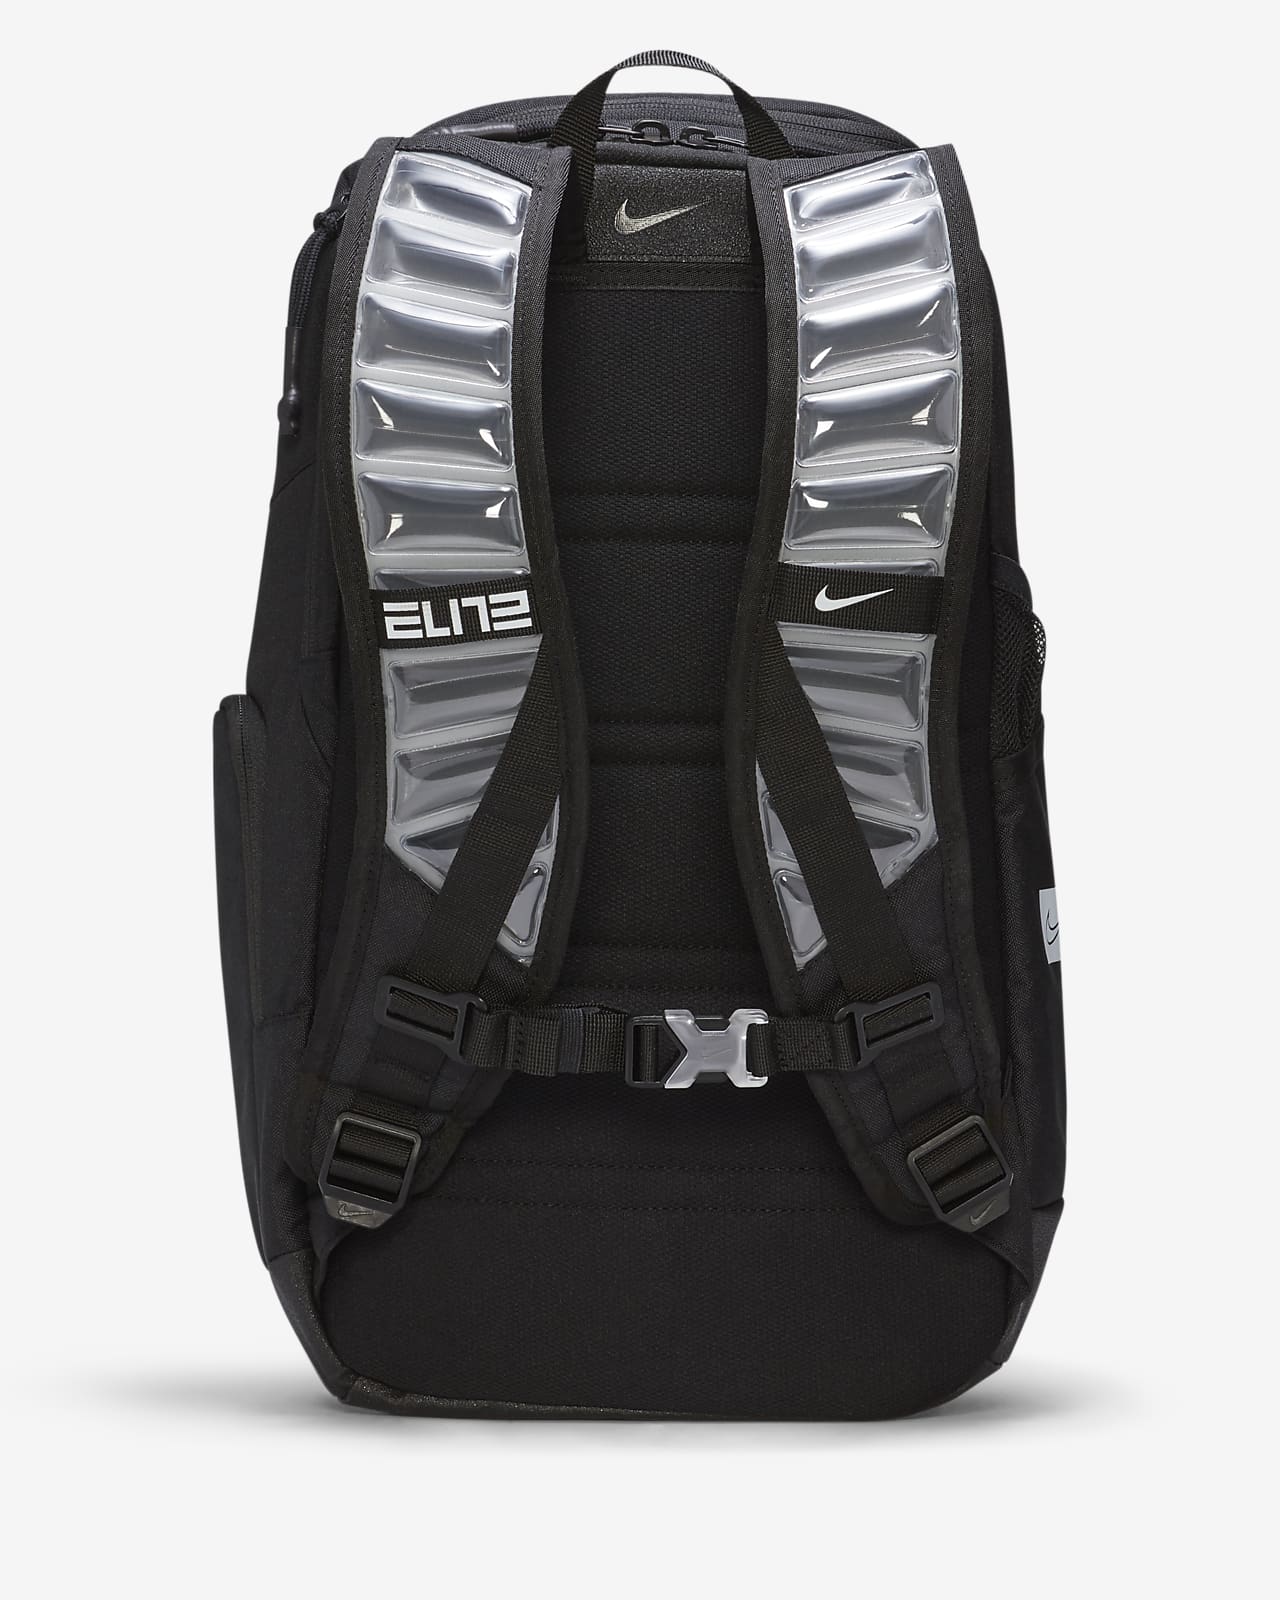 nike elite backpack white and black